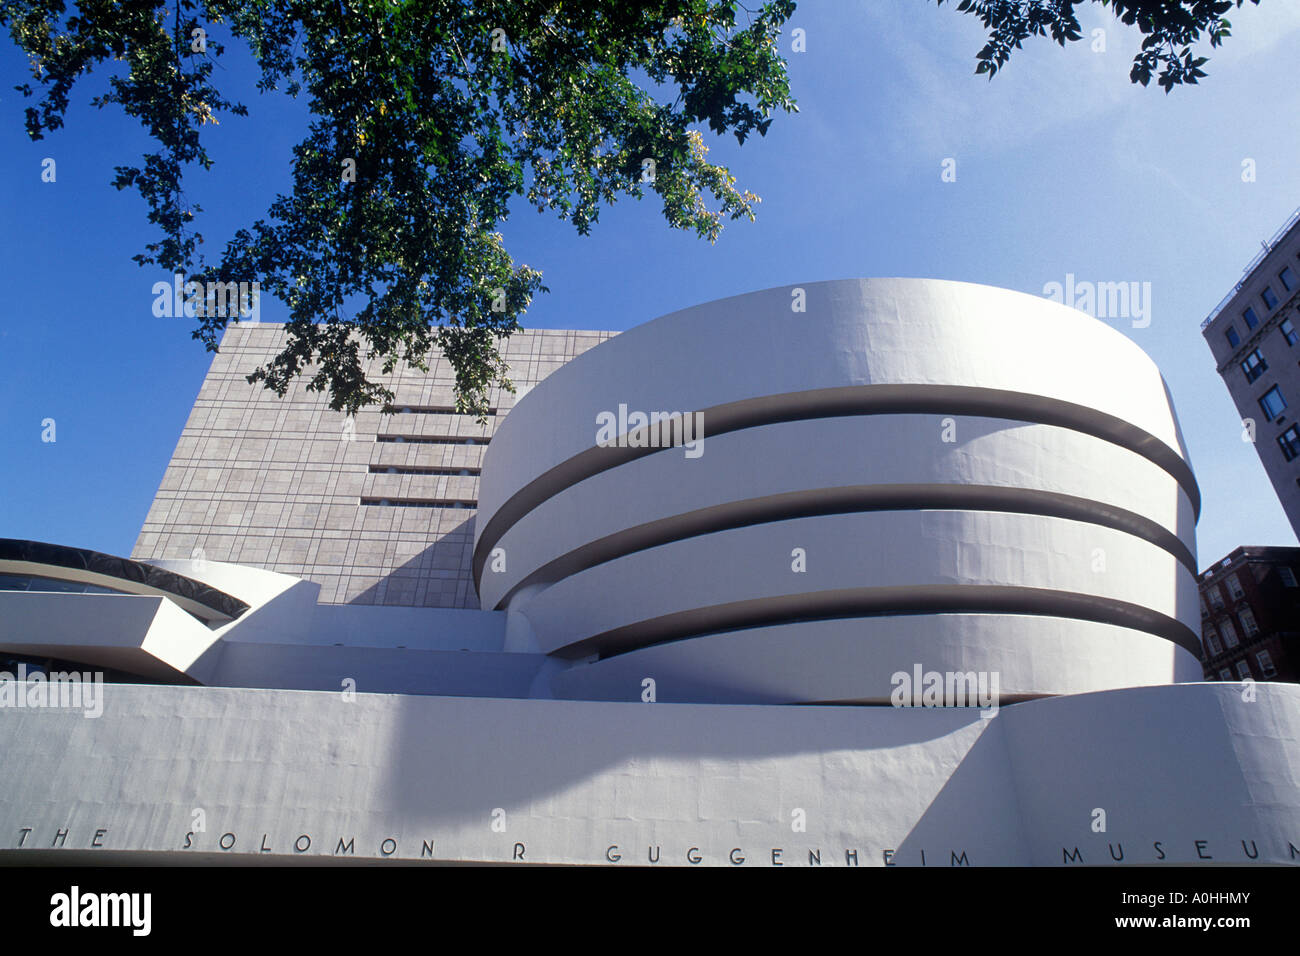 Extérieur du musée Guggenheim. Frank Lloyd Wright architecte. Le bâtiment circulaire Solomon R Guggenheim est un site classé au patrimoine mondial de l'UNESCO. ÉTATS-UNIS Banque D'Images